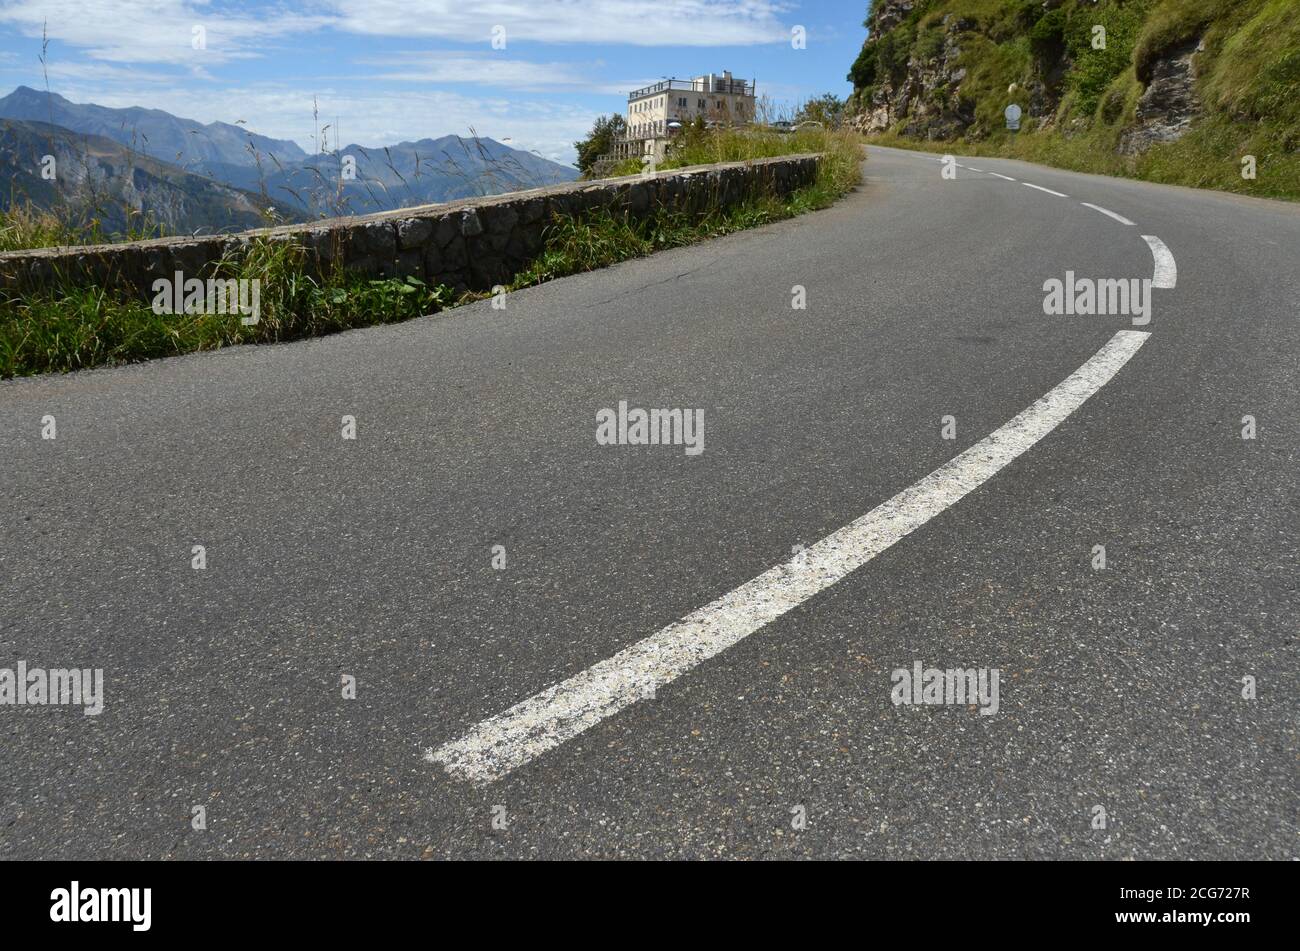 La route menant au sommet du col de l'Aubisque (col d'Aubisque) dans la chaîne de montagnes des Pyrénées. Voici l'« Hôtel des crêtes blanches ». Banque D'Images